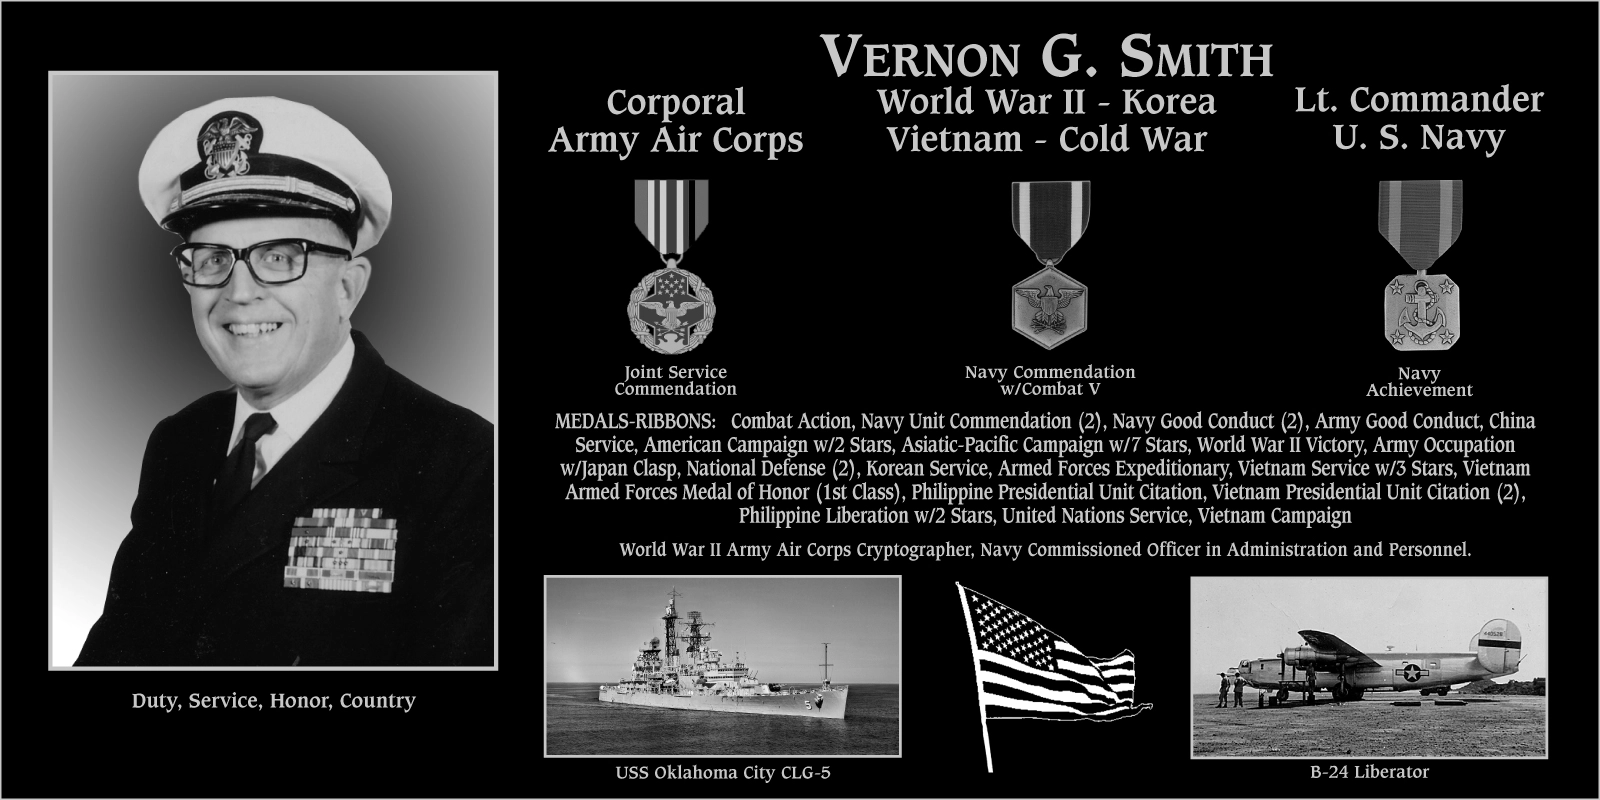 Vernon G. Smith